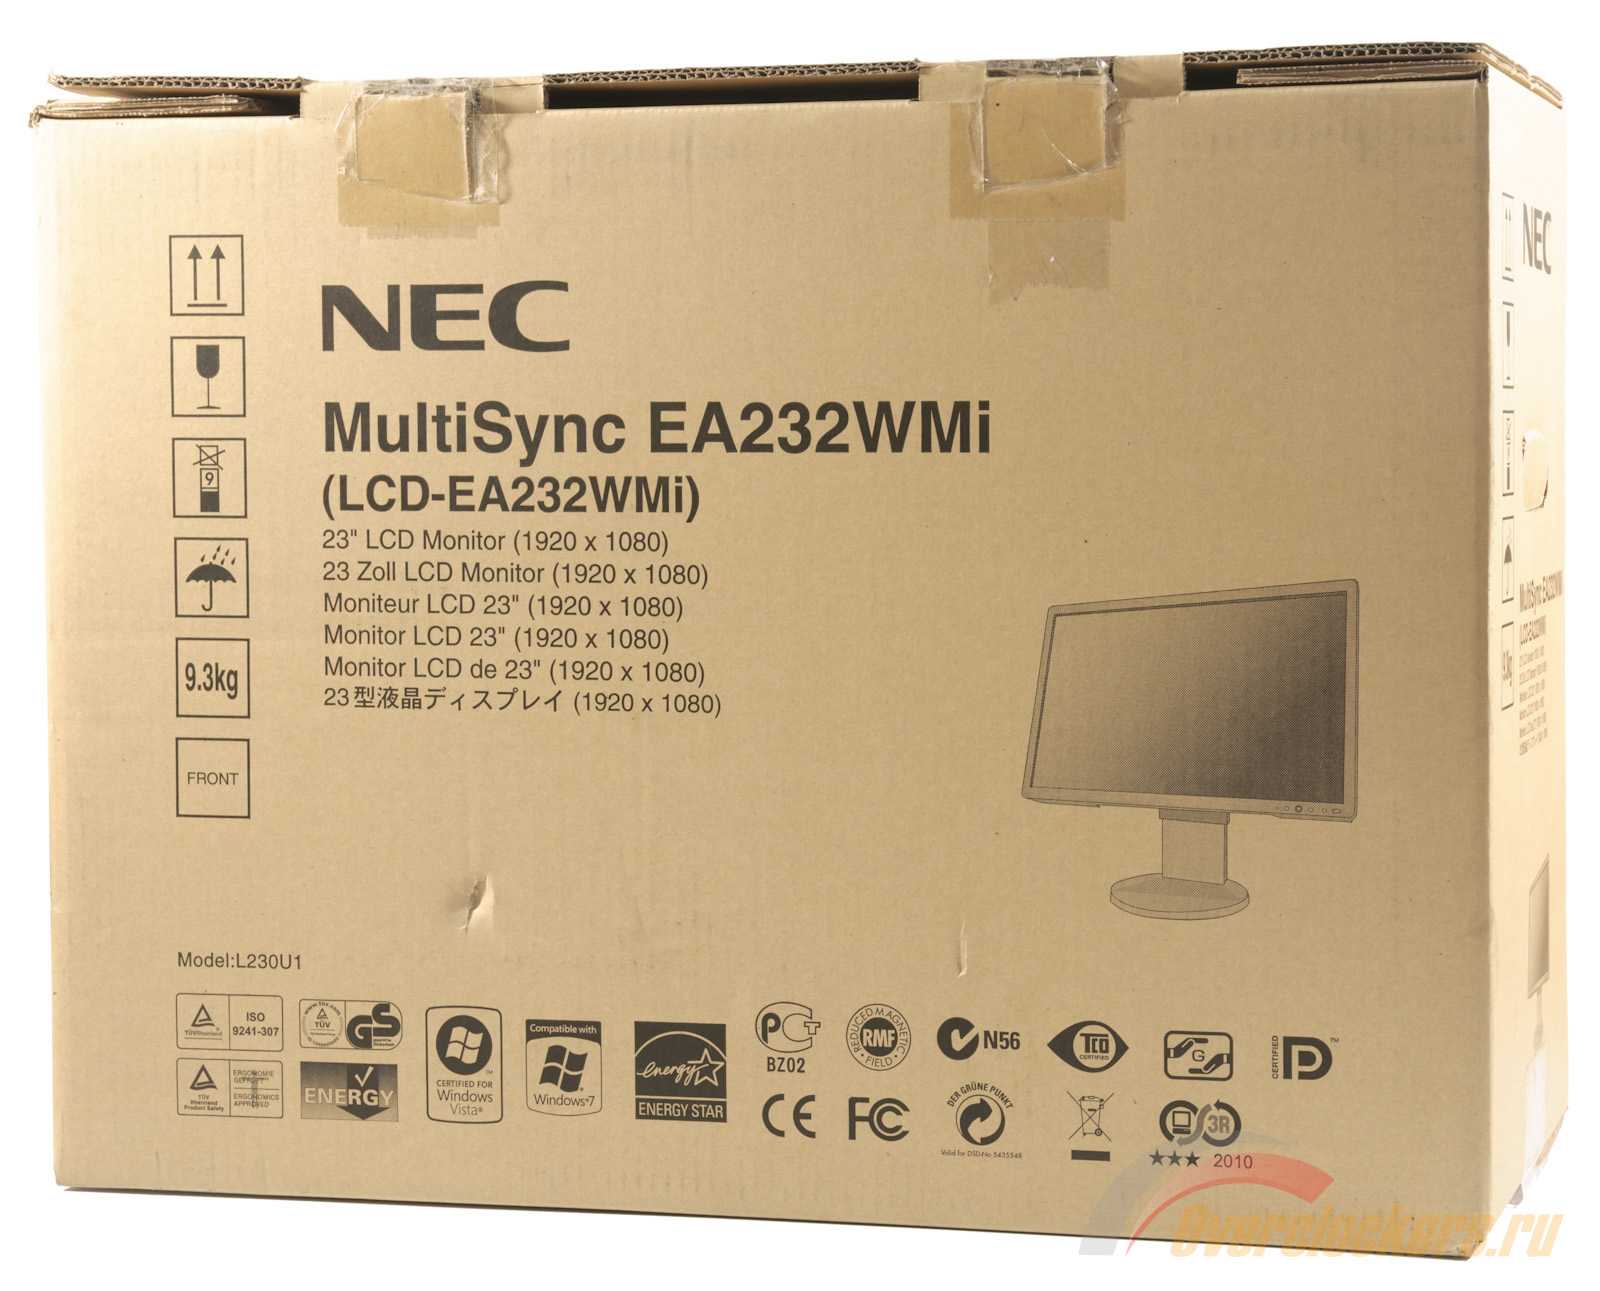 Nec multisync ea232wmi - описание, характеристики, тест, отзывы, цены, фото